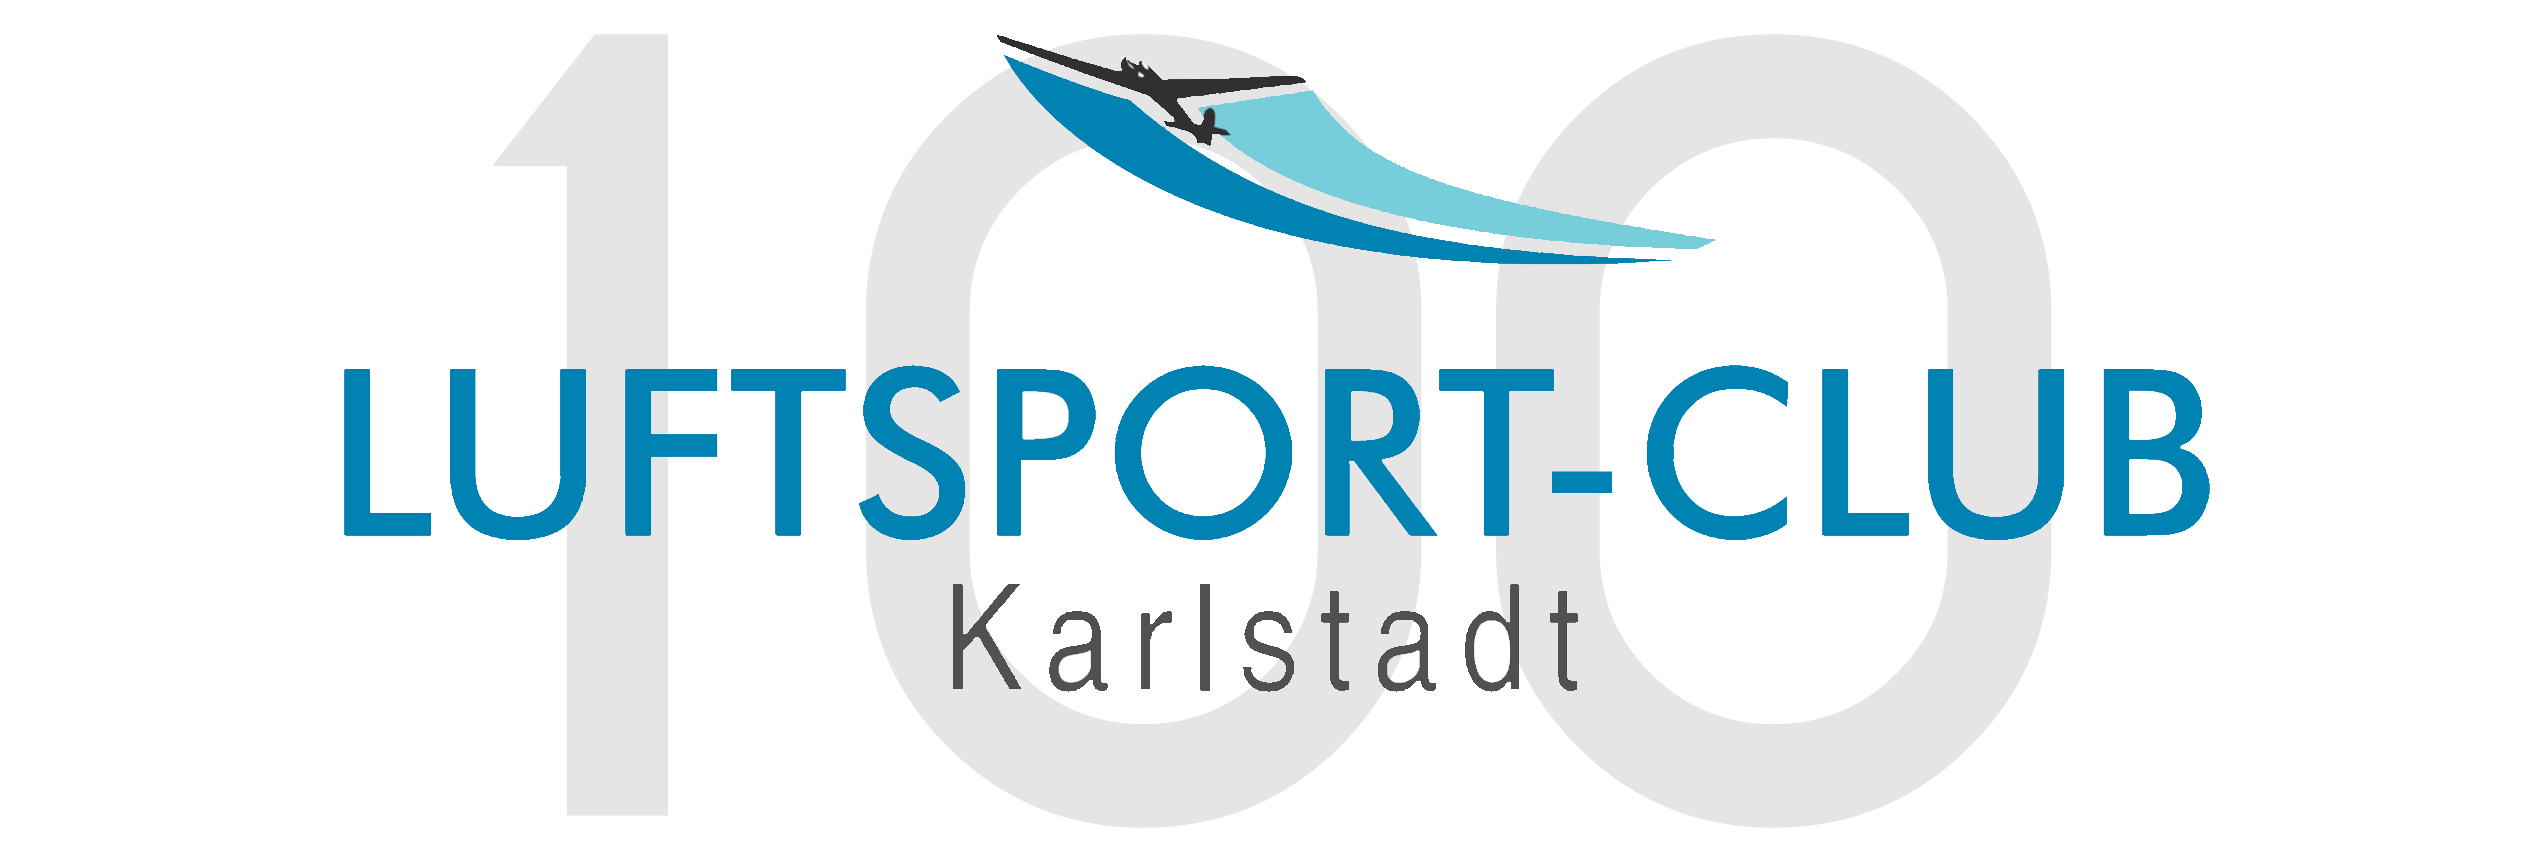 Luftsport-Club Karlstadt e.V.